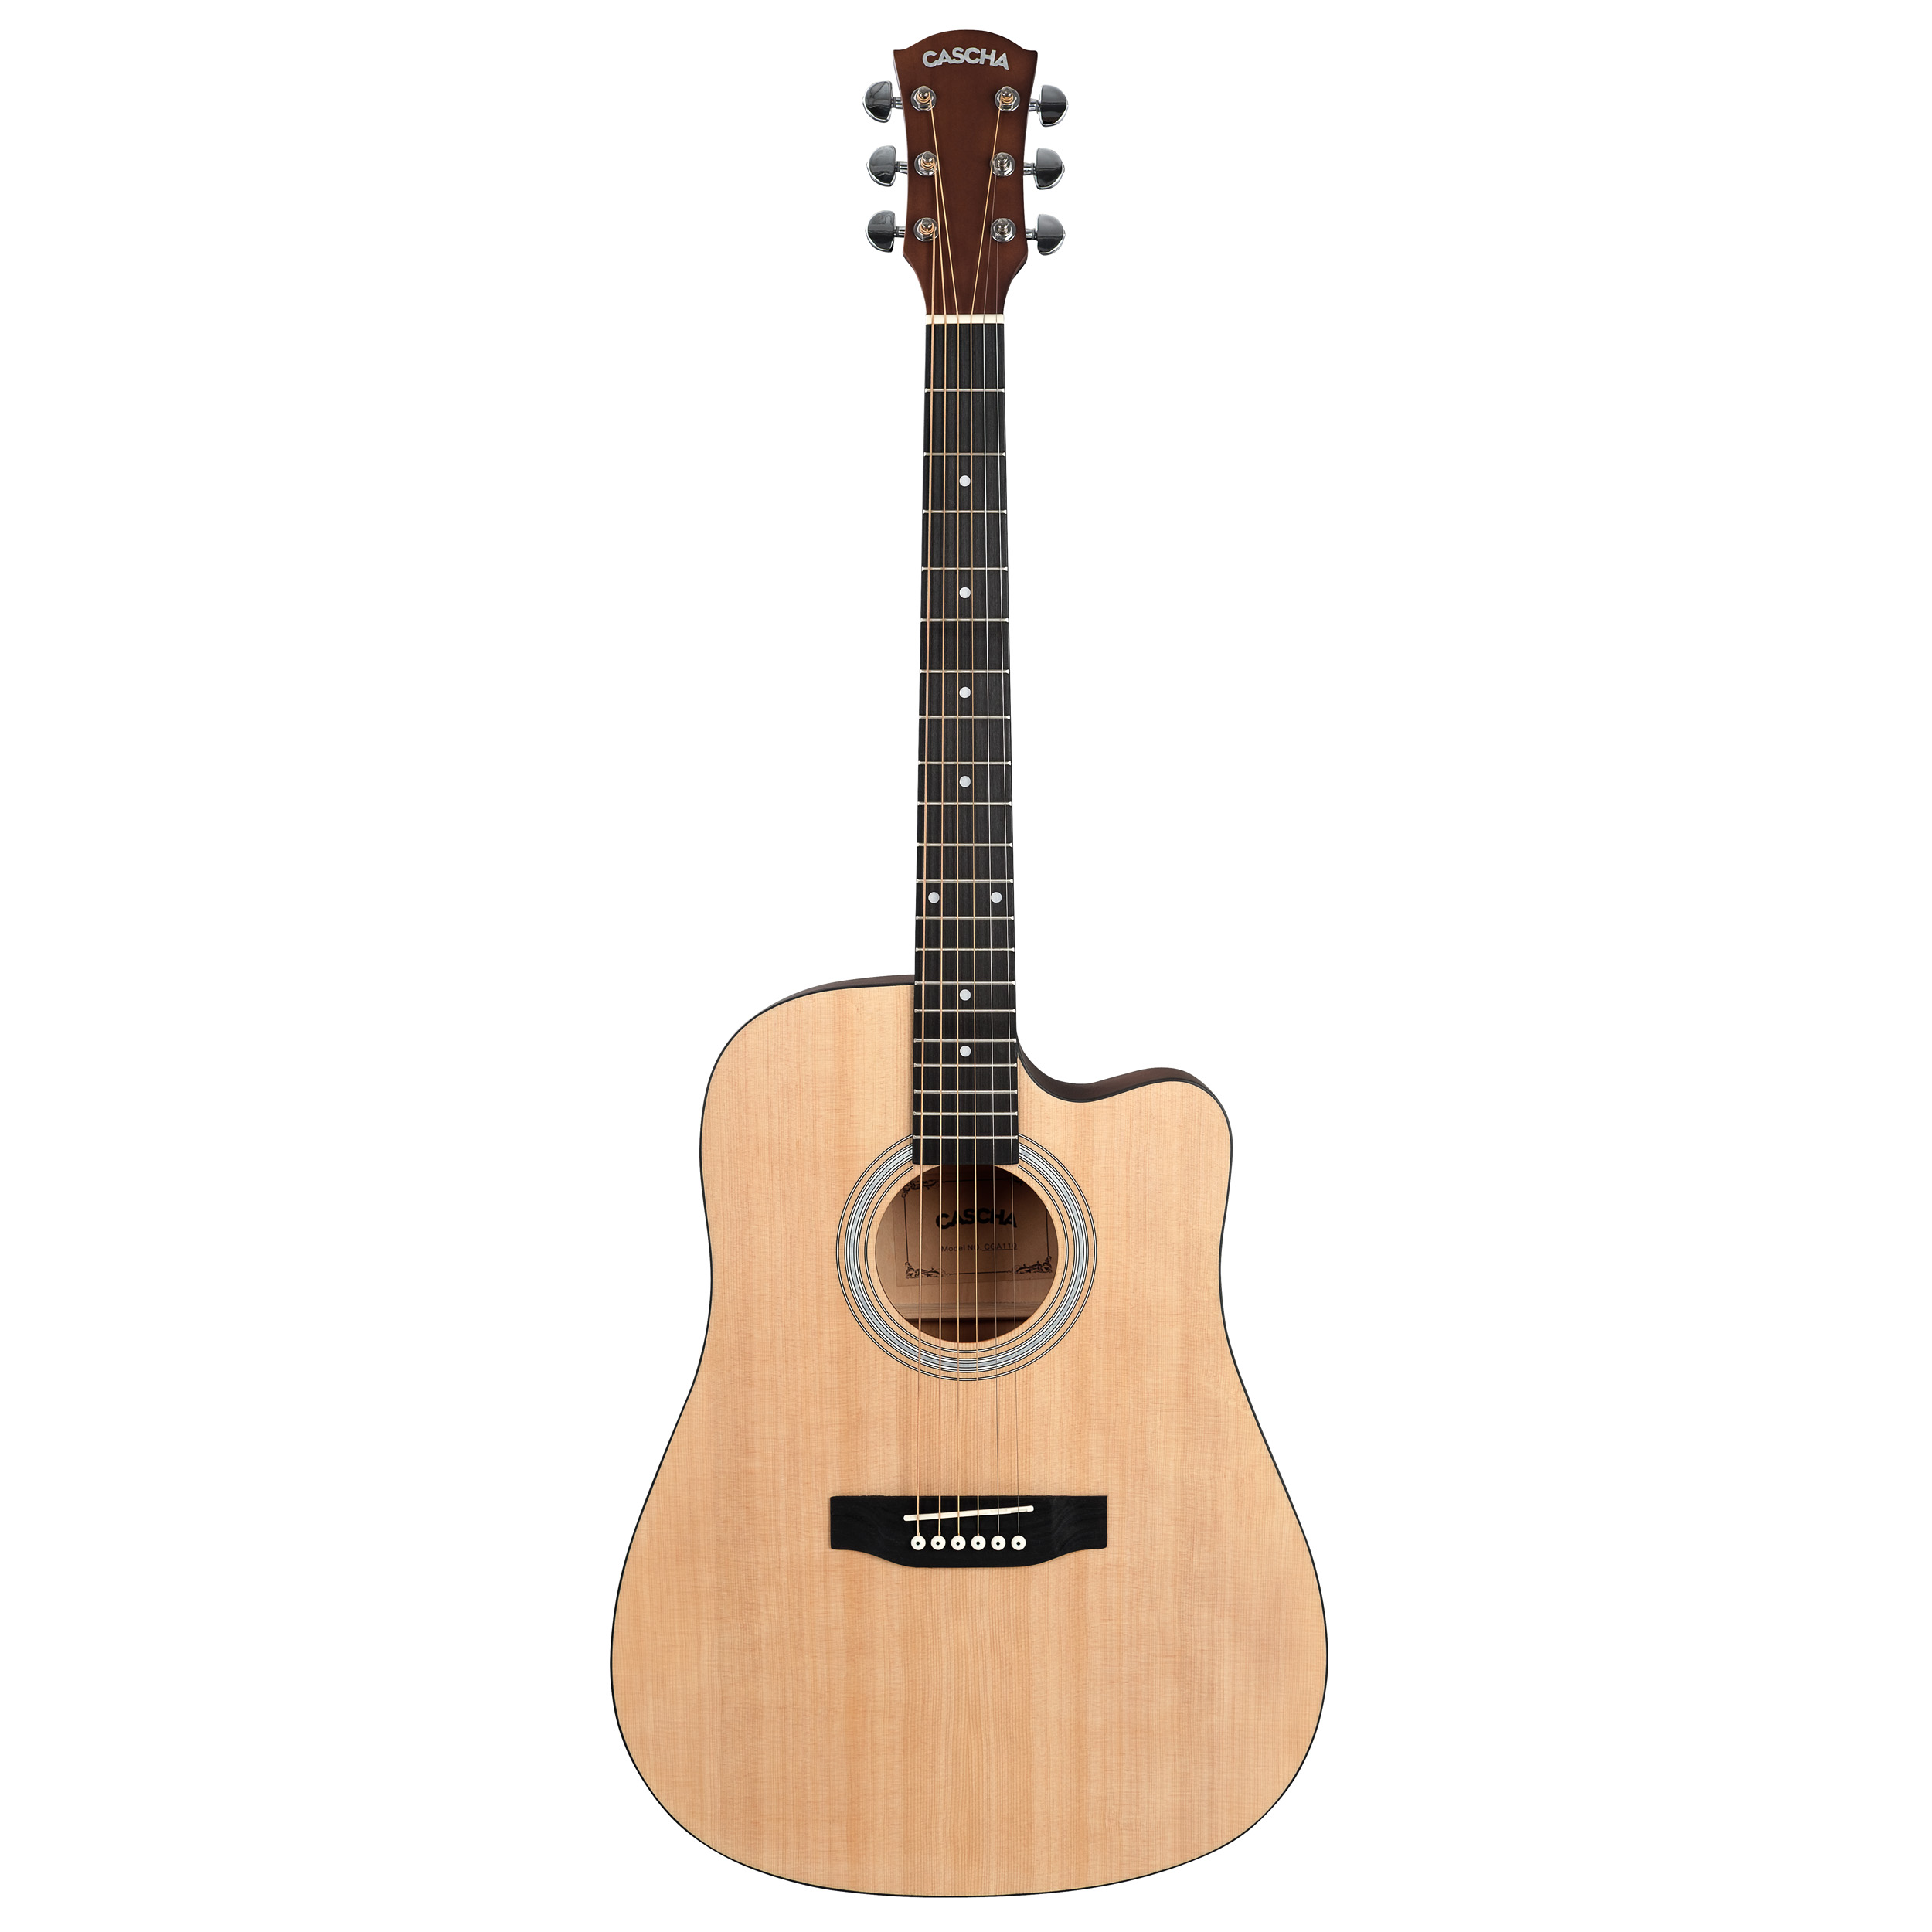 Акустические гитары Cascha CGA110 Student Series акустическая гитара с вырезом 95 см